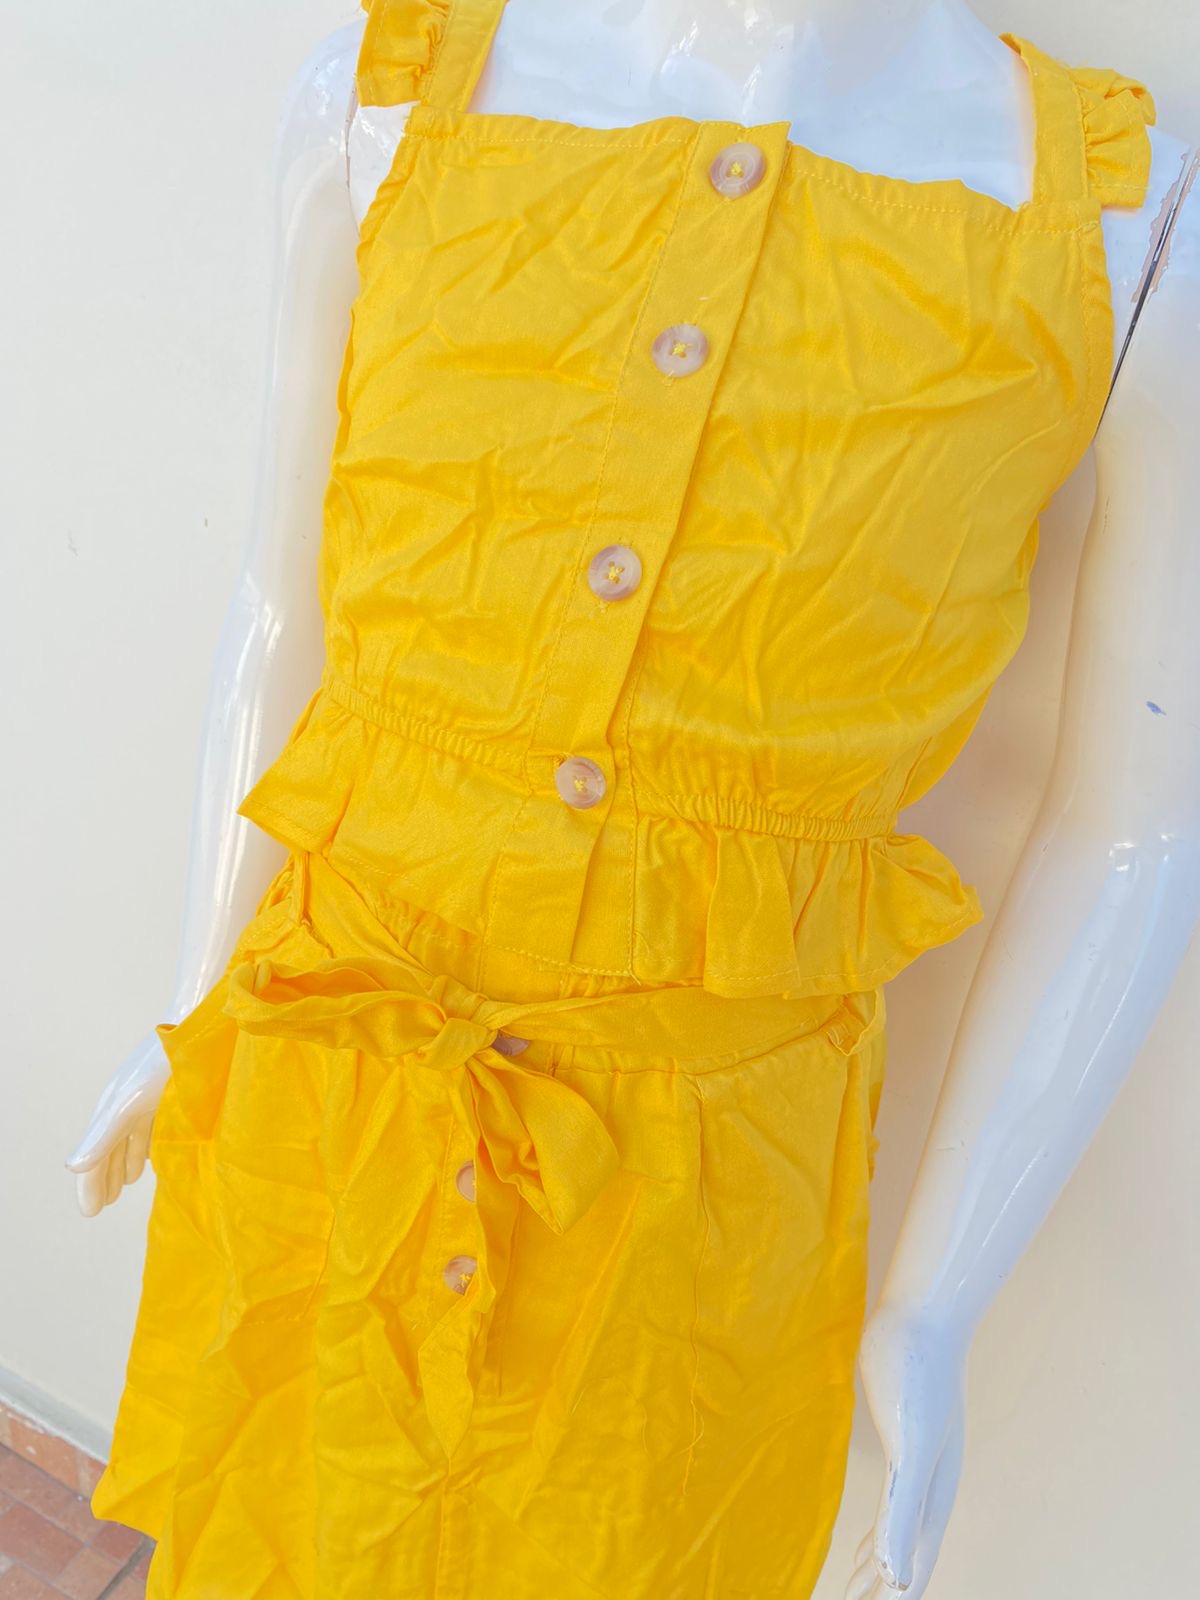 Conjunto  New Look Original, falda y top en color amarillo mostaza.